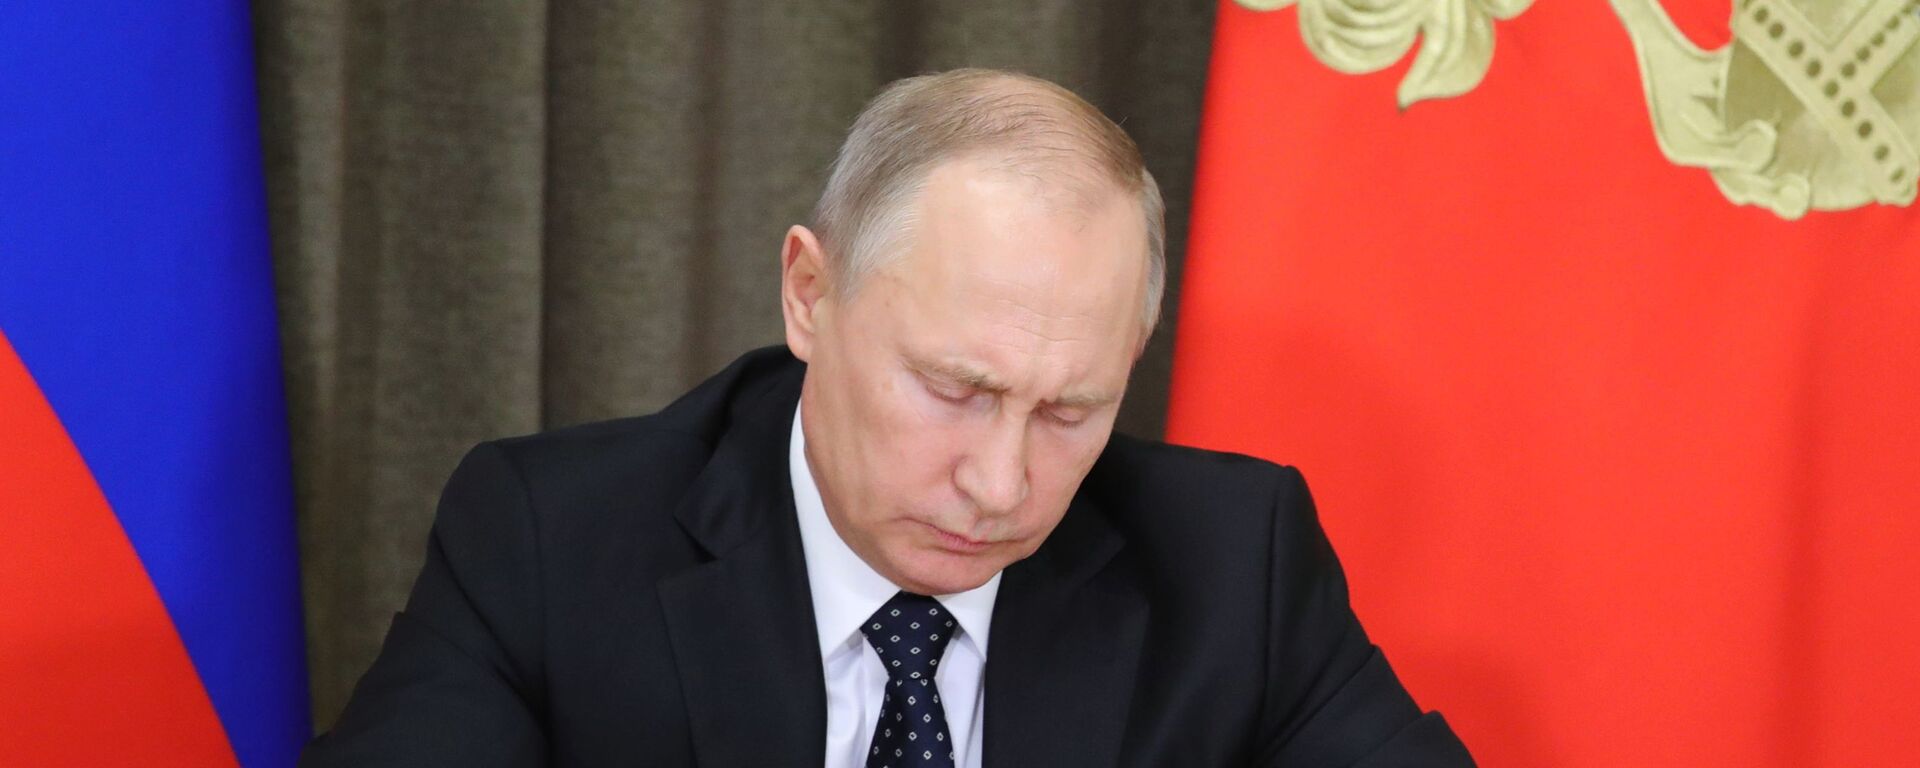 Президент РФ В. Путин провел совещание по вопросам обеспечения технического переоснащения Вооруженных сил - Sputnik Узбекистан, 1920, 03.07.2020